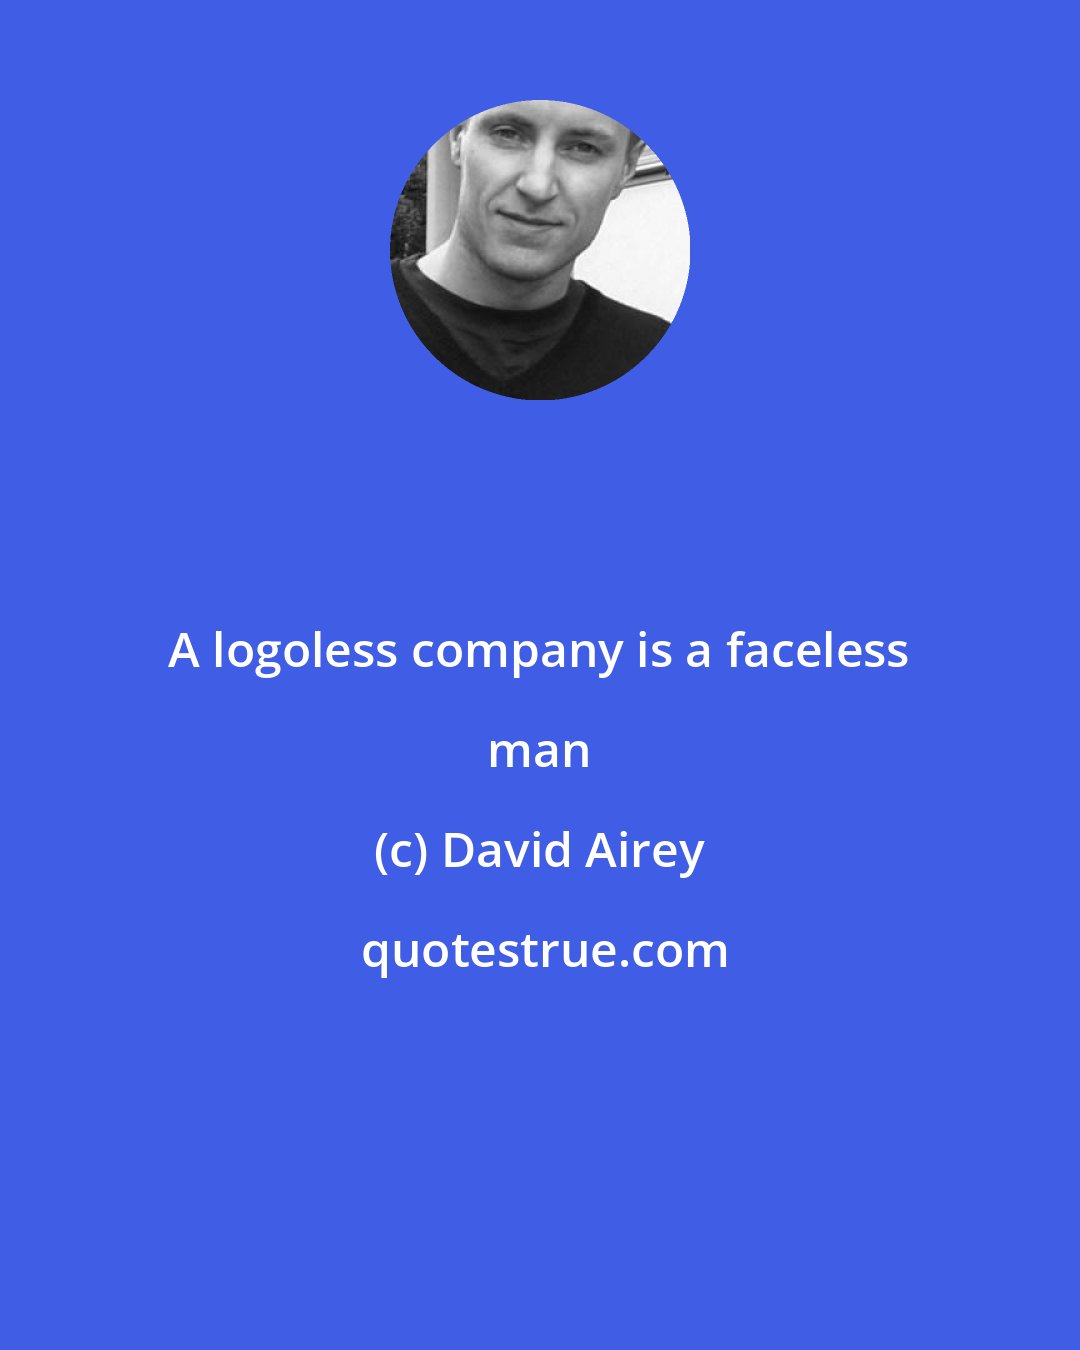 David Airey: A logoless company is a faceless man